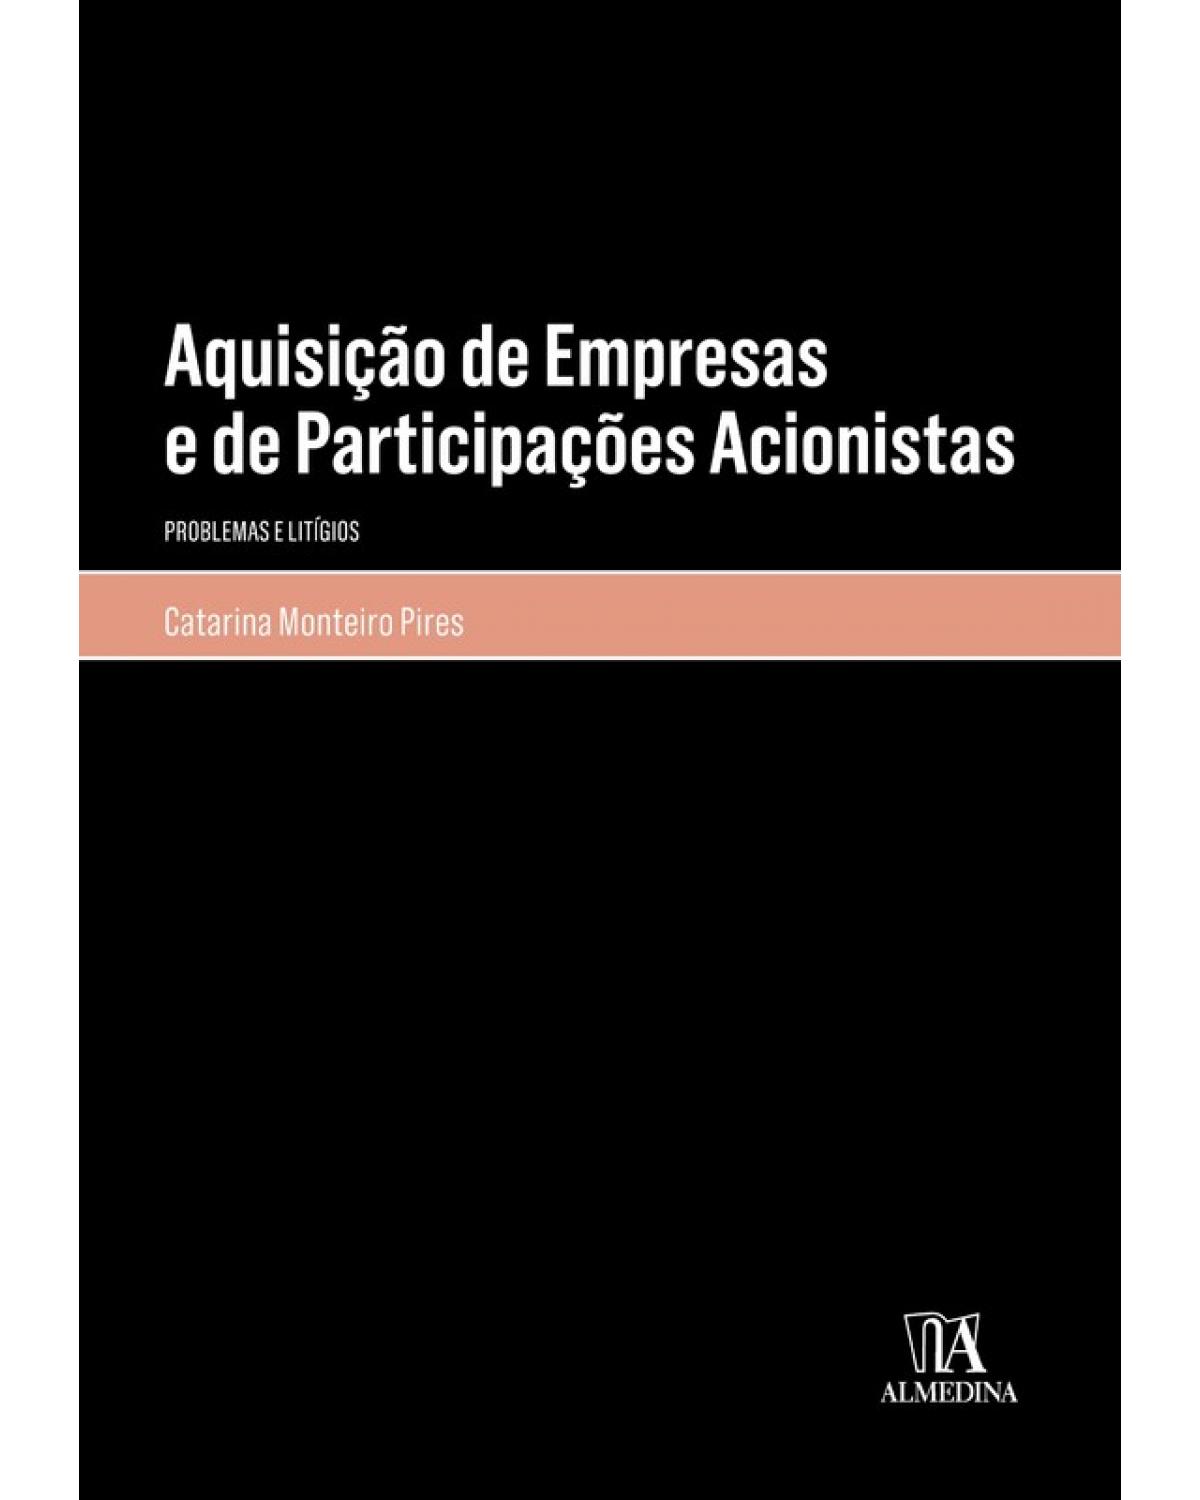 Aquisição de empresas e de participações acionistas - problemas e litígios - 1ª Edição | 2018